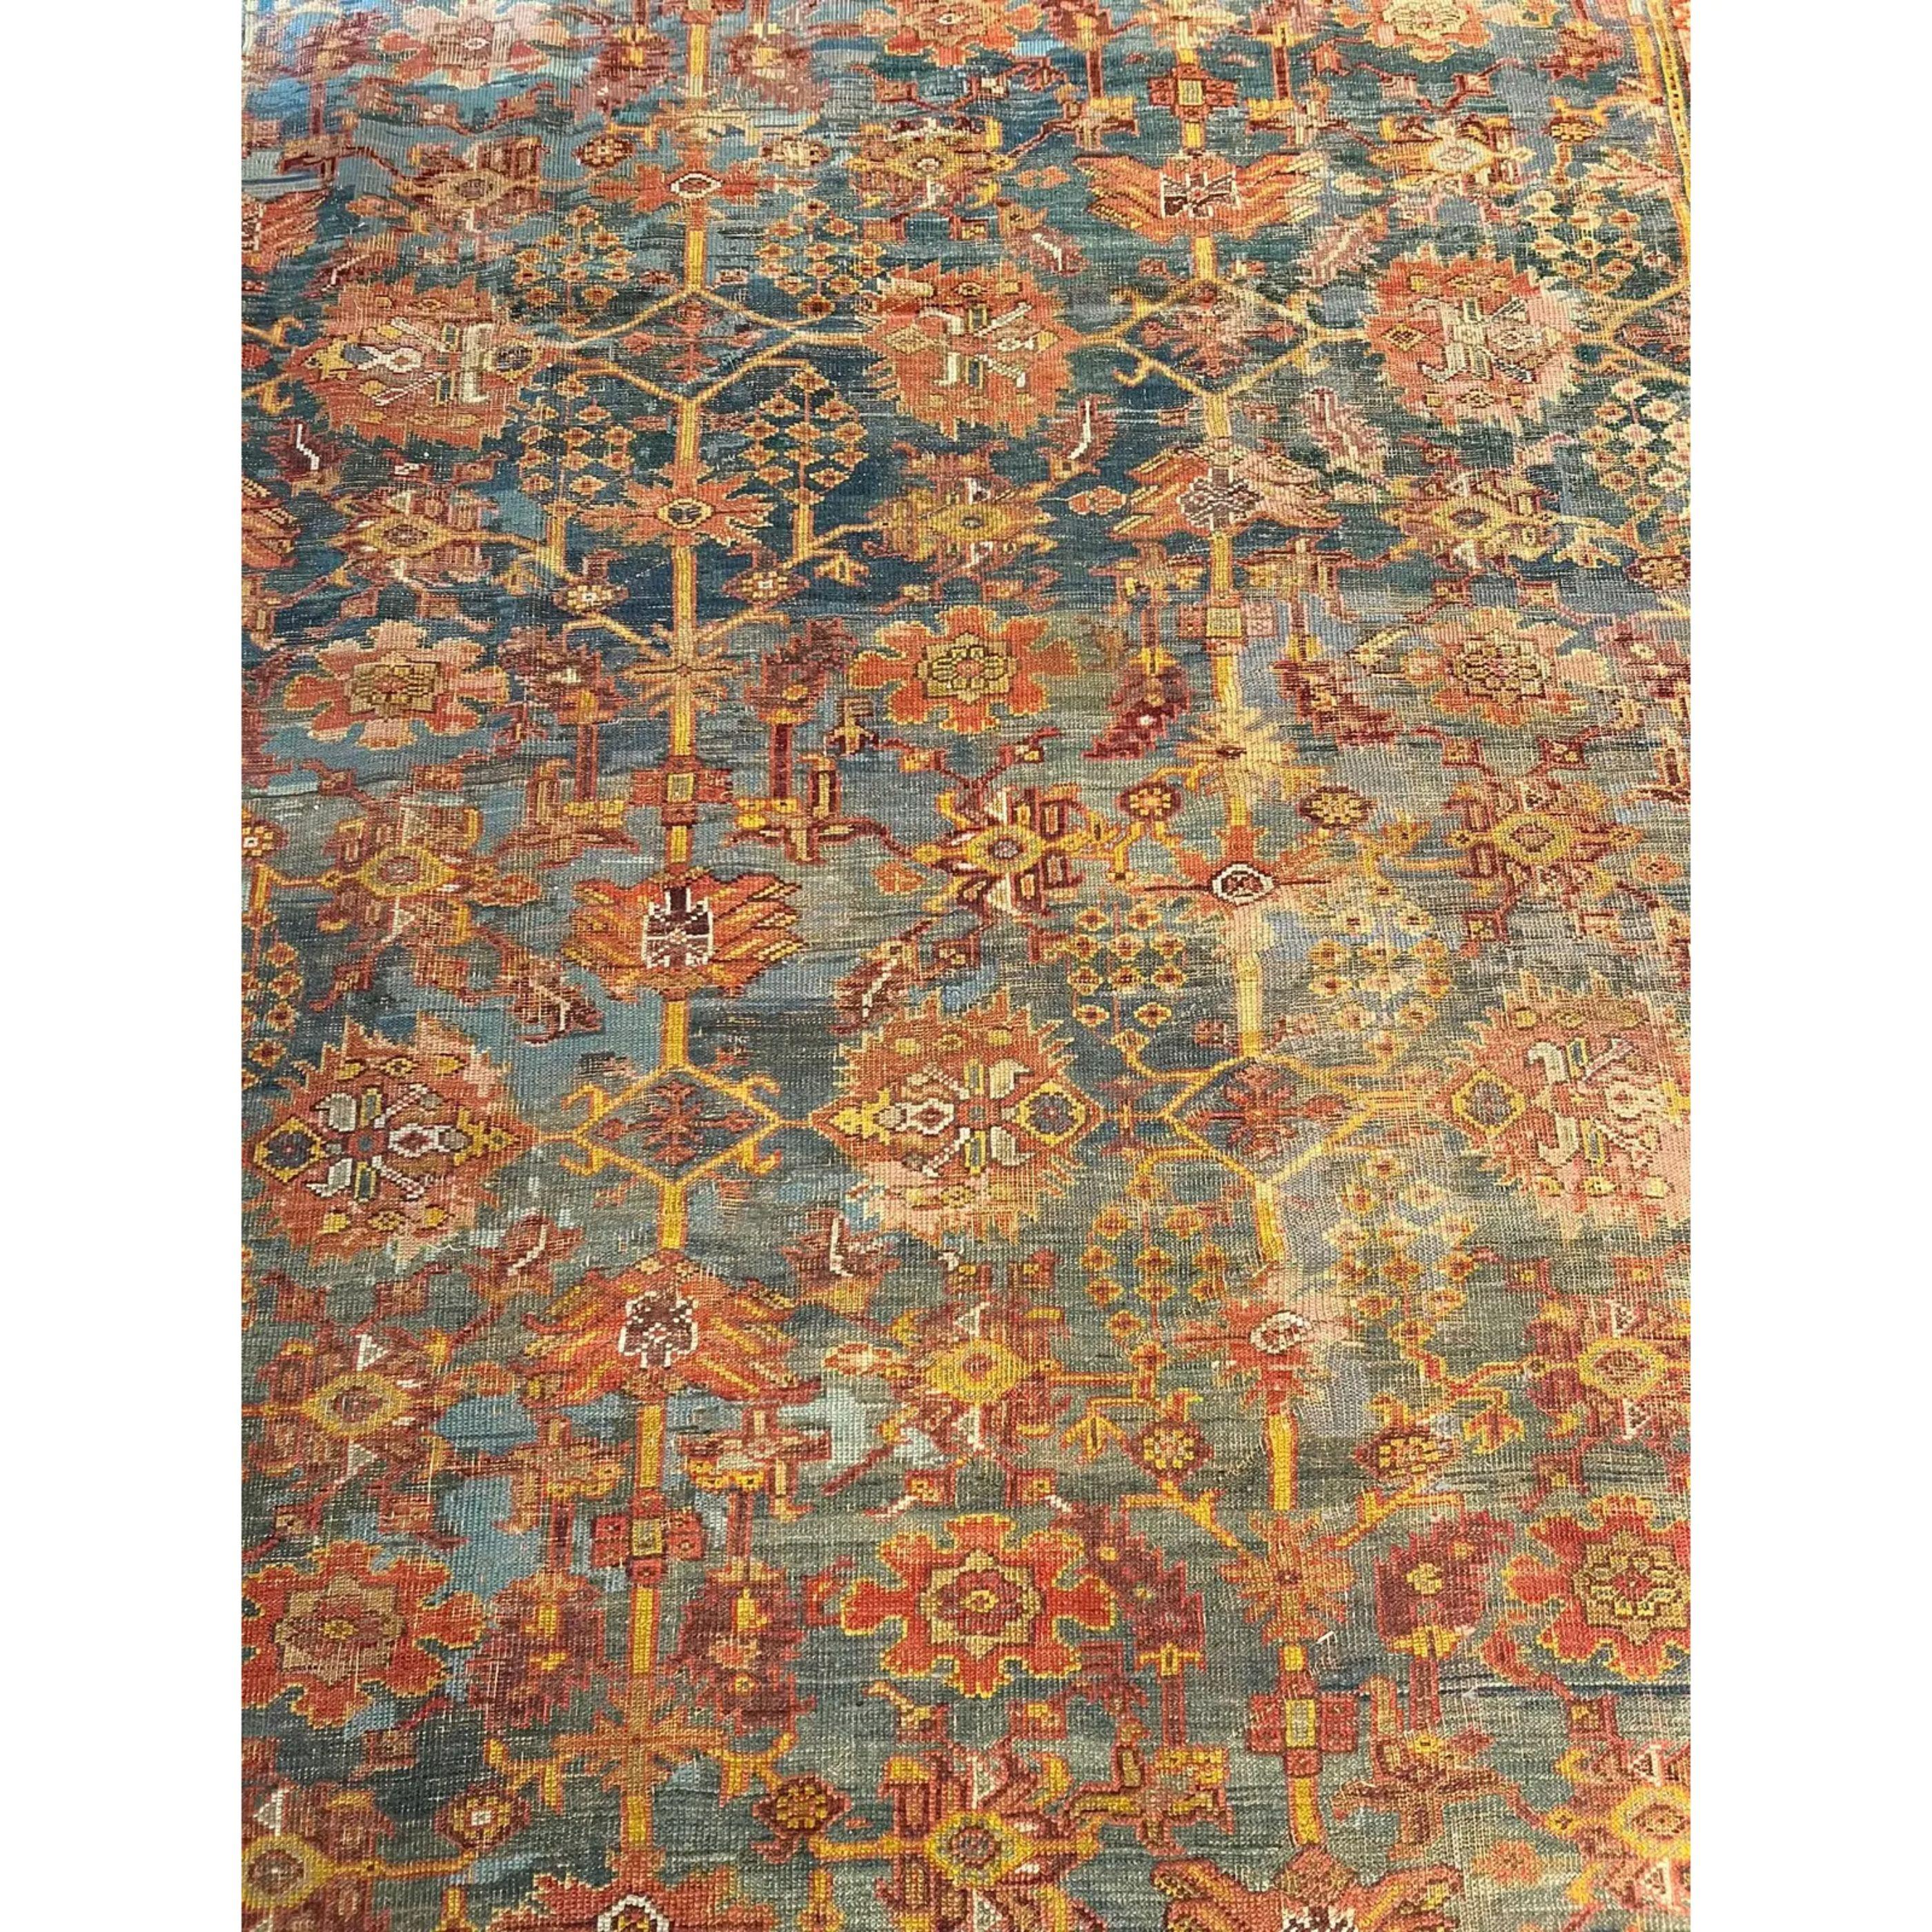 Les anciens tapis turcs Oushak sont tissés dans l'ouest de la Turquie depuis le début de la période ottomane. Les historiens leur attribuent la plupart des grands chefs-d'œuvre du tissage des tapis turcs du XVe au XVIIe siècle. En revanche, on sait